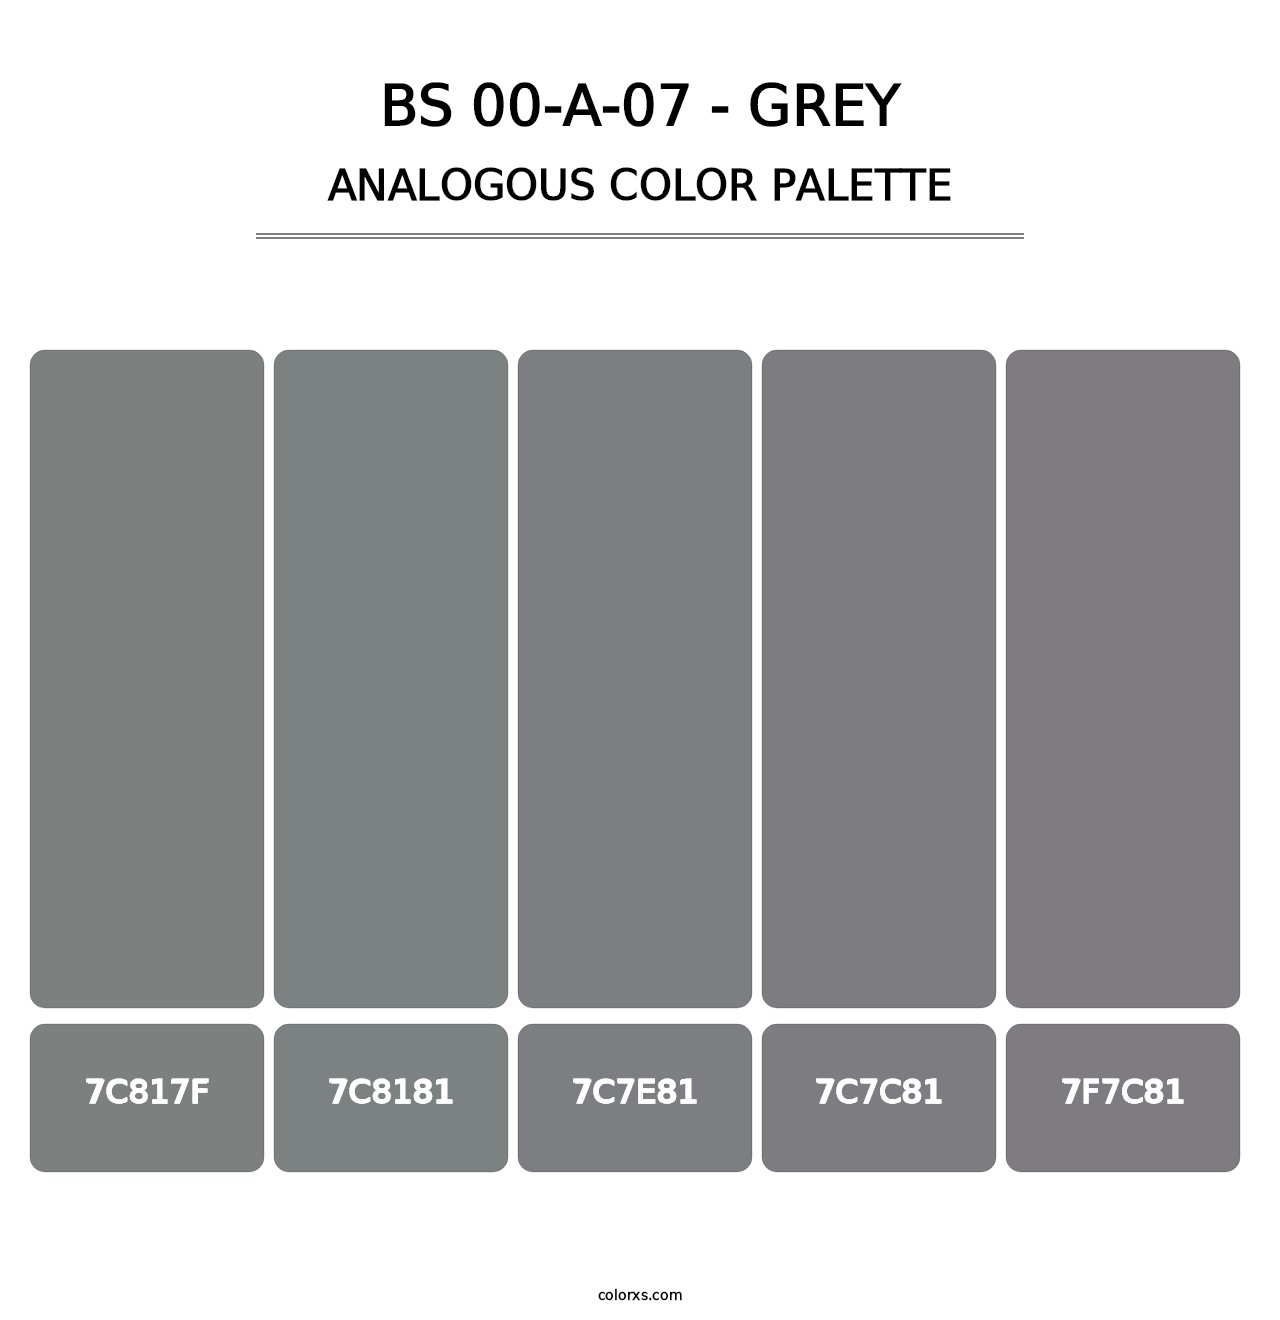 BS 00-A-07 - Grey - Analogous Color Palette